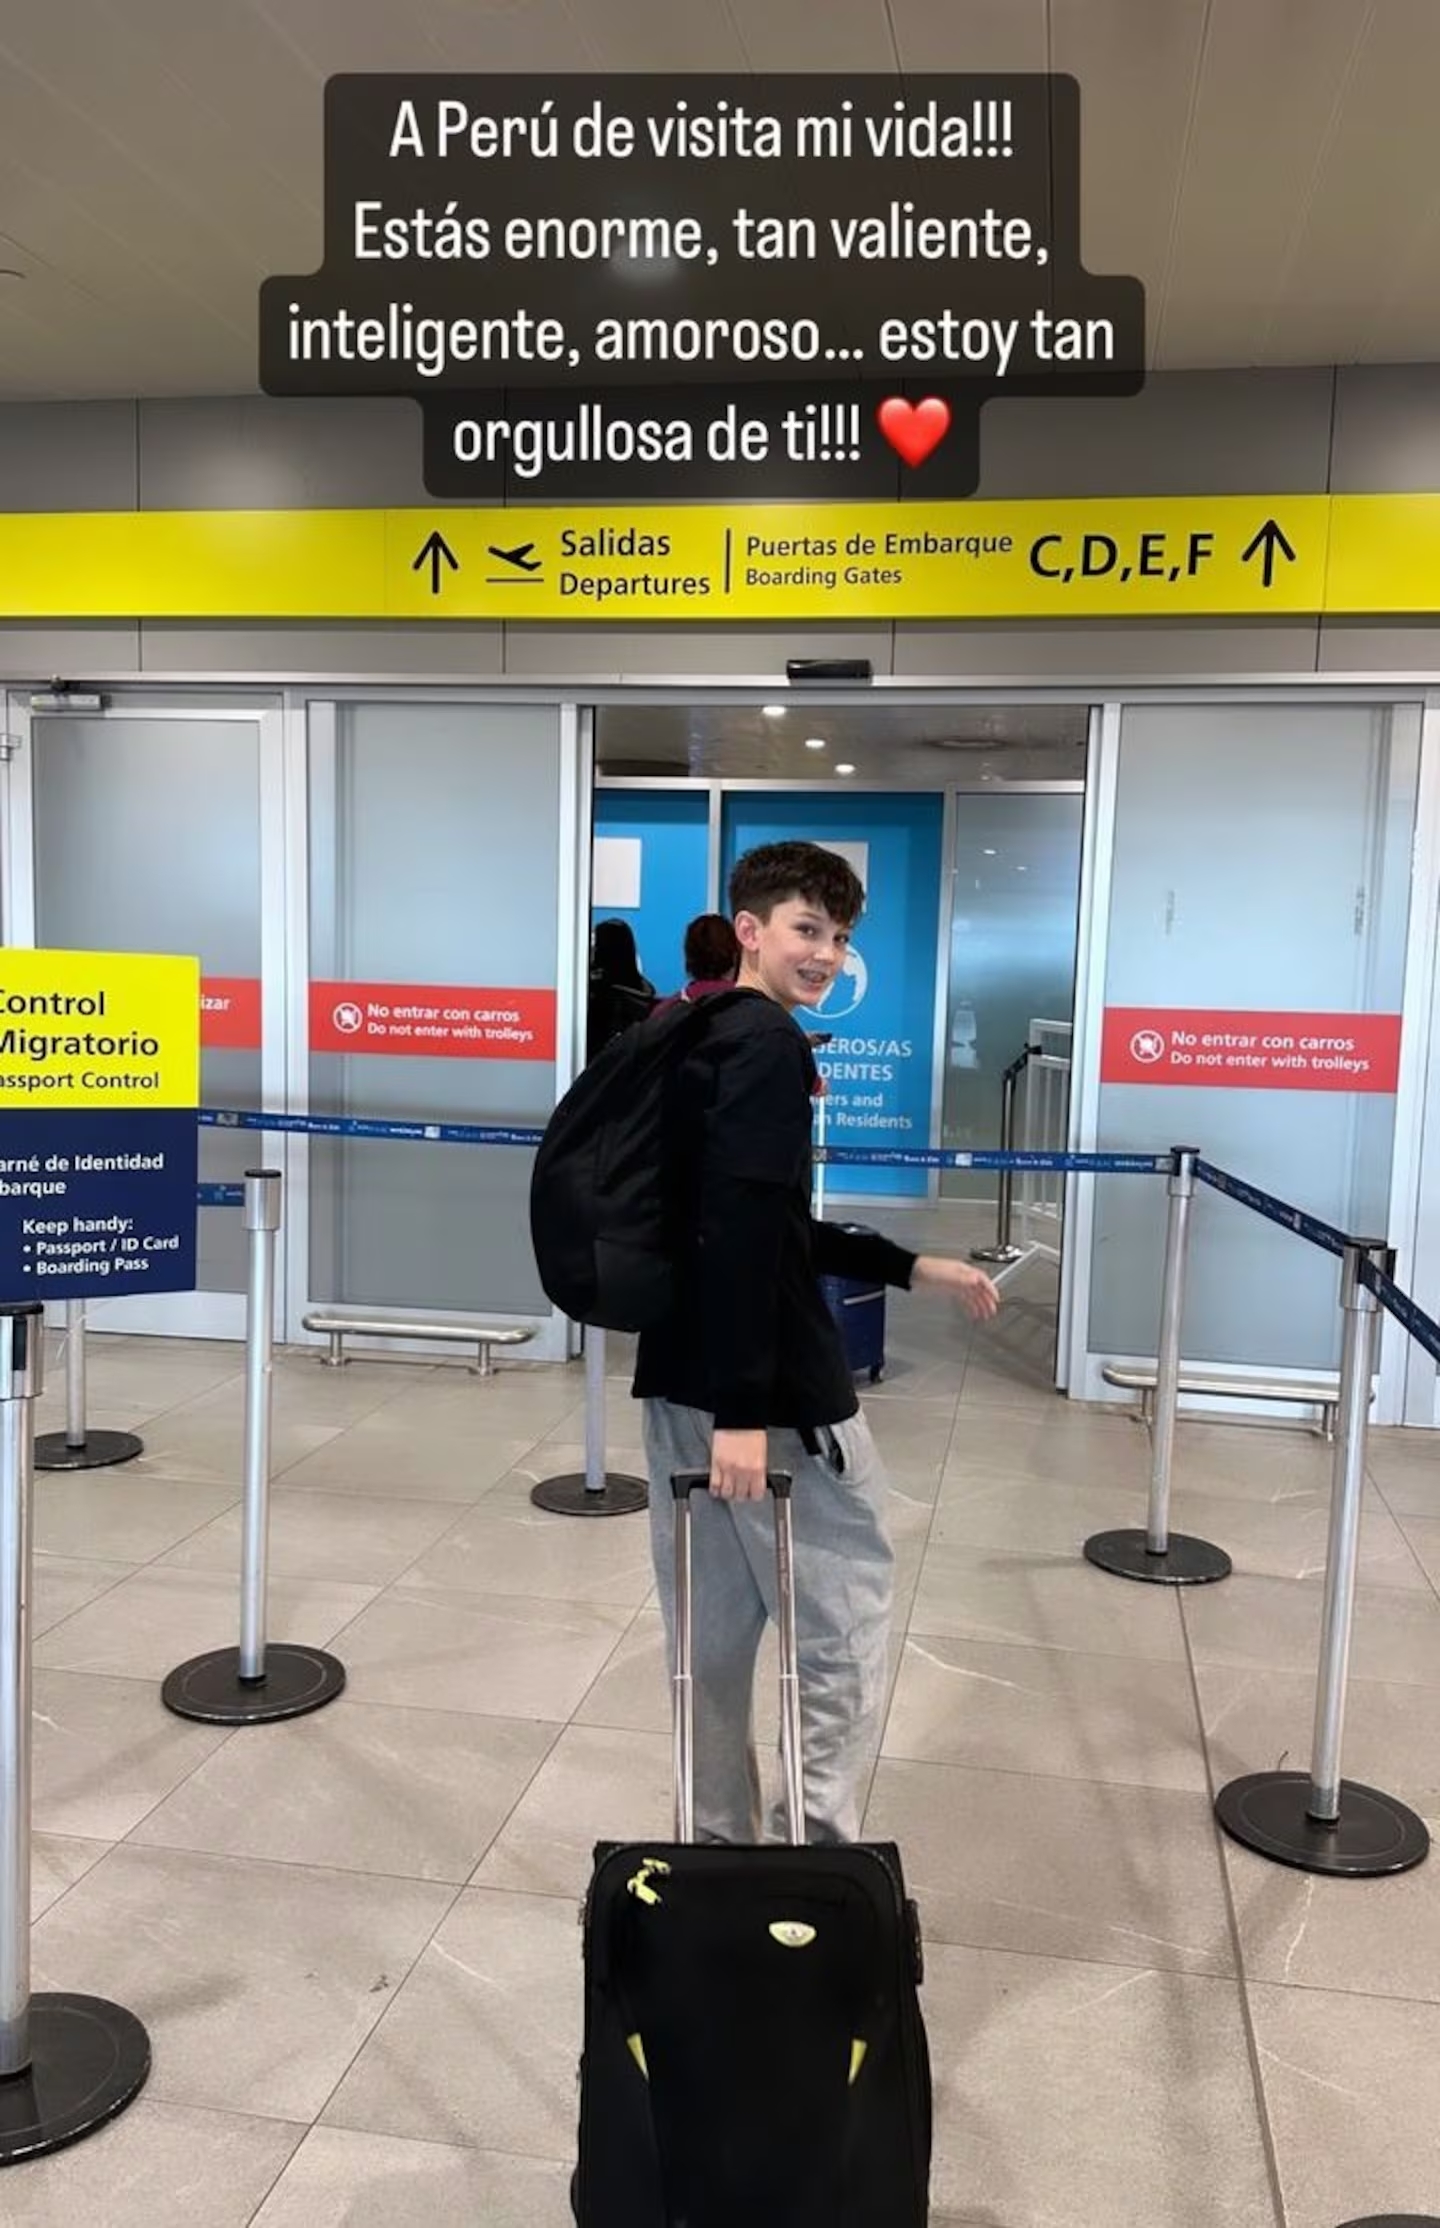 Noah en el aeropuerto rumbo a Perú